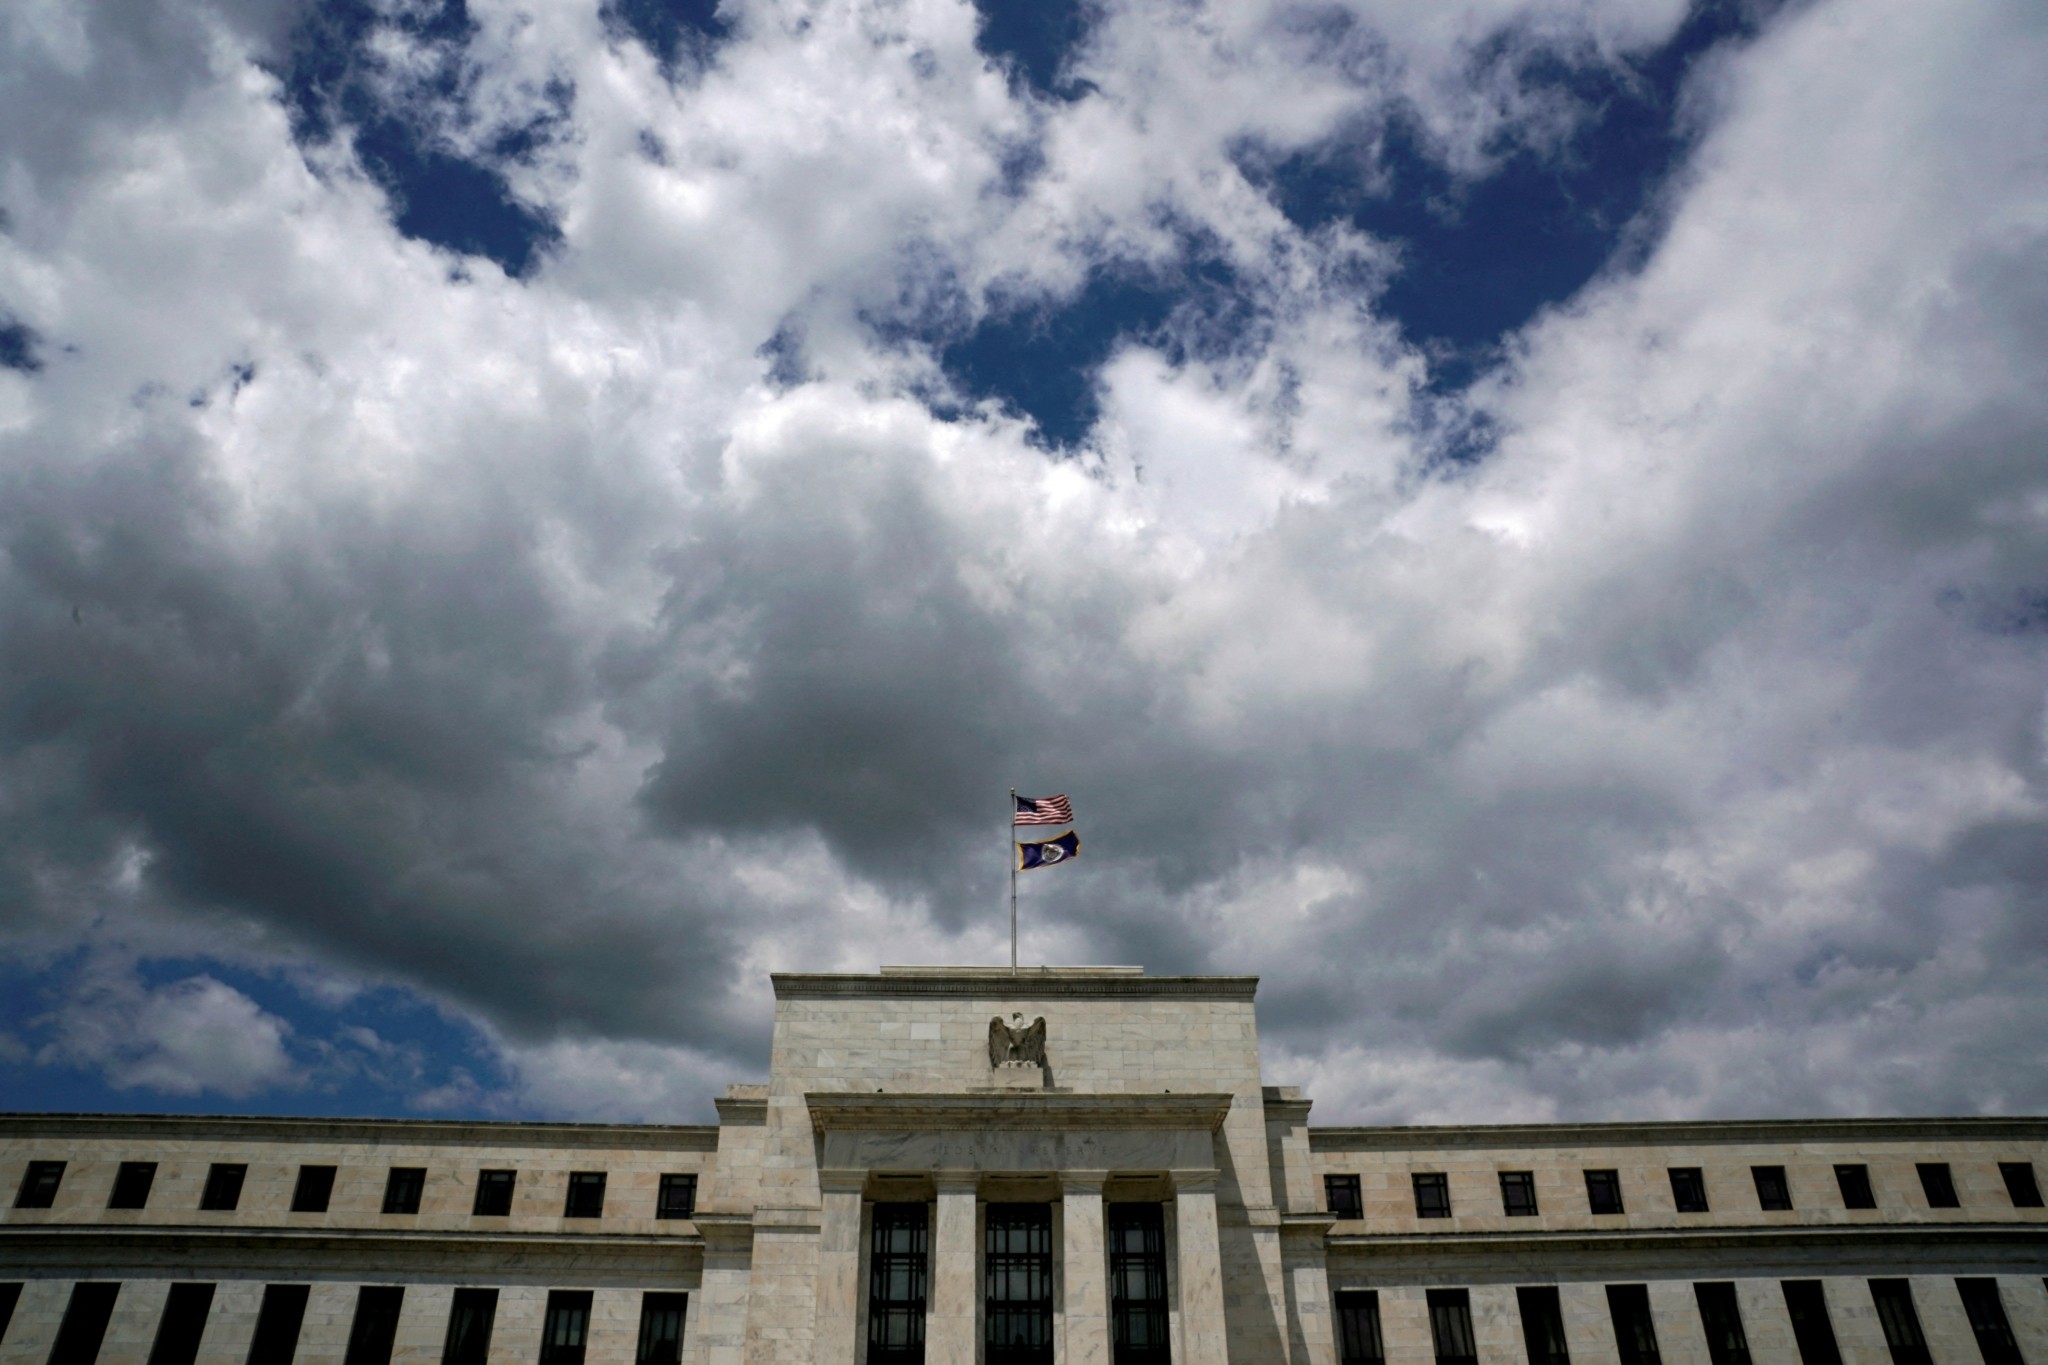 Η Wall Street στοιχηματίζει ποιες κεντρικές τράπεζες θα αλλάξουν πρώτες νομισματική πολιτική